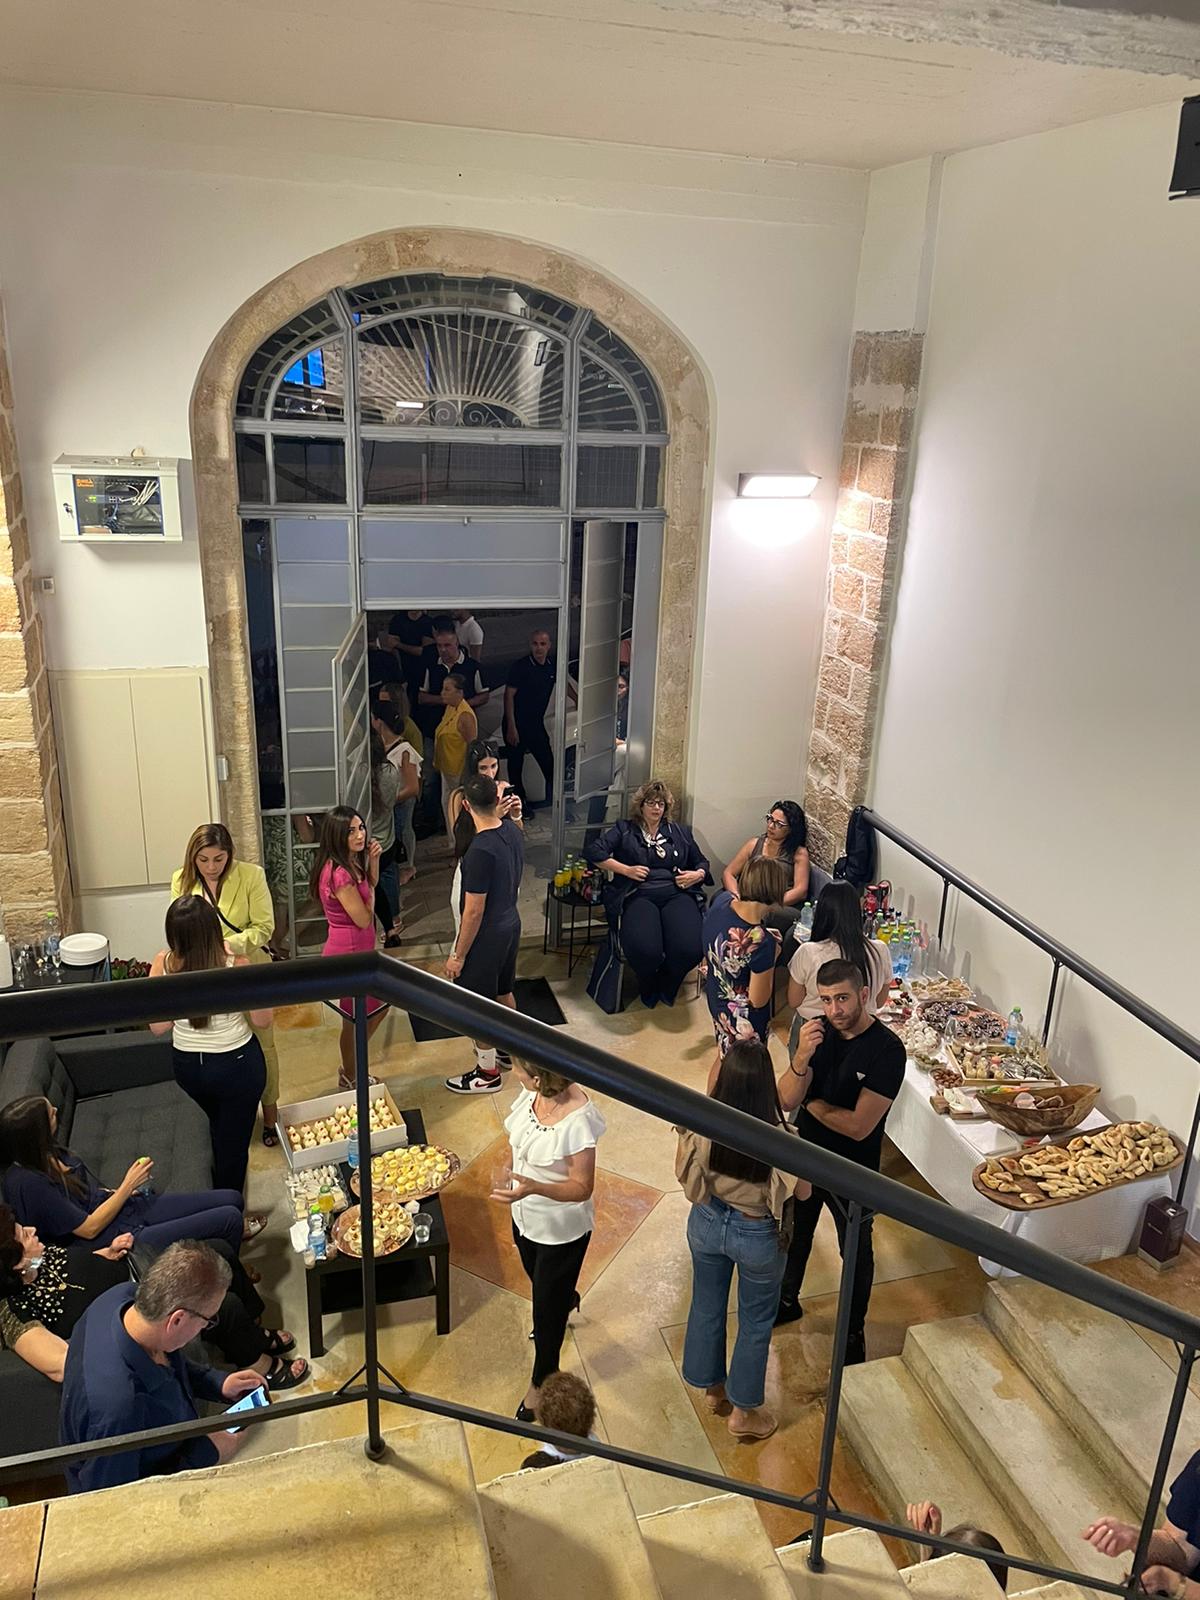  جديد في يافا - افتتاح مكتب ديك و حلو للمحاماة 